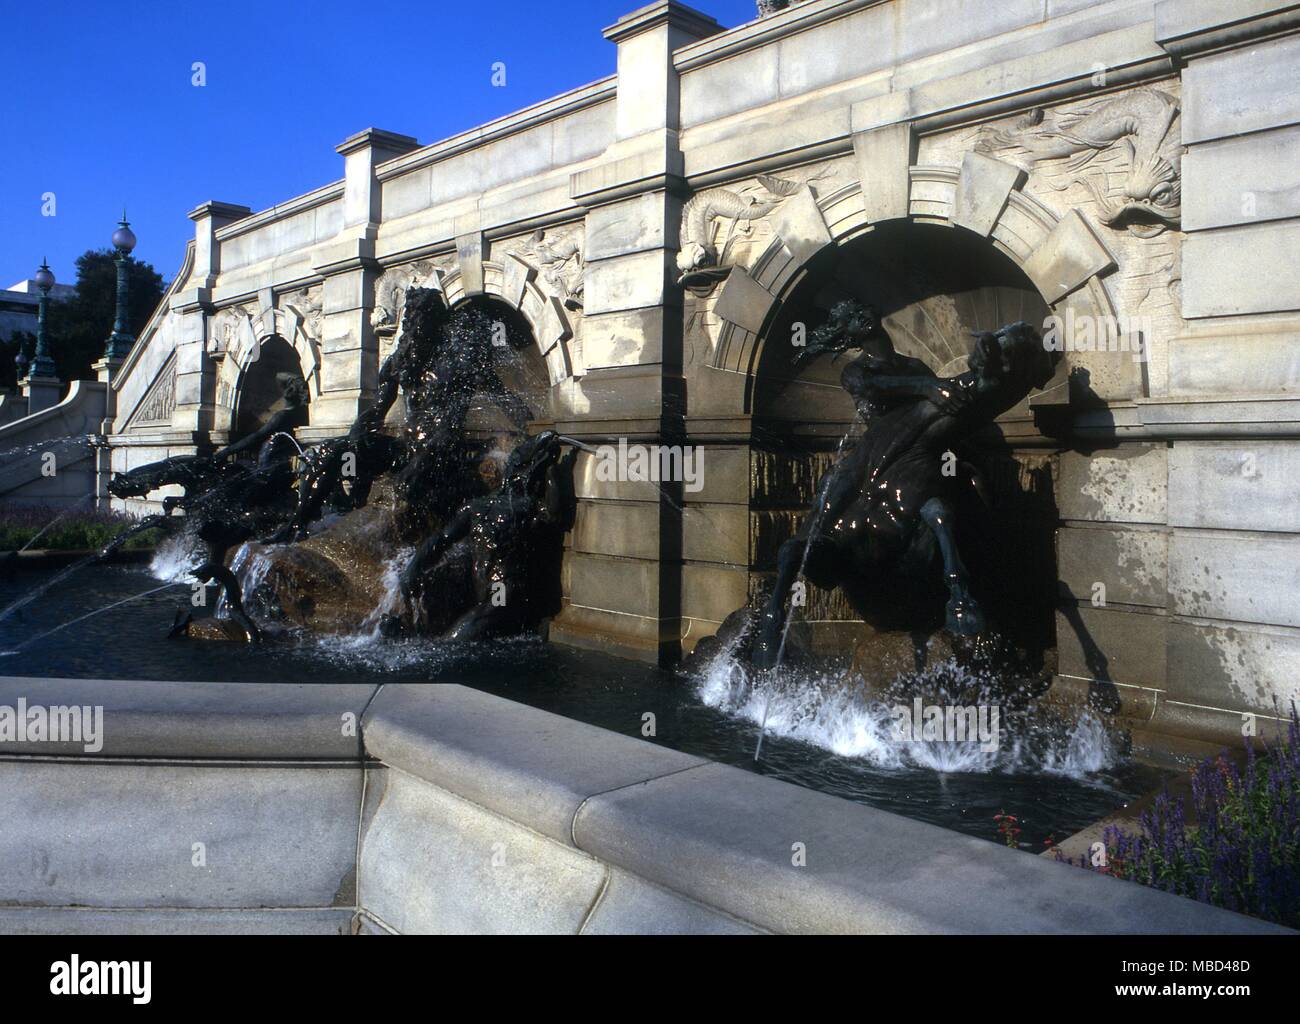 Elementos - Undines o agua-espíritus montando los caballos de Poseidón (Dios del mar) en la fuente de Neptuno, de la Biblioteca del Congreso en Washington DC. - ©Charles Walker / Foto de stock